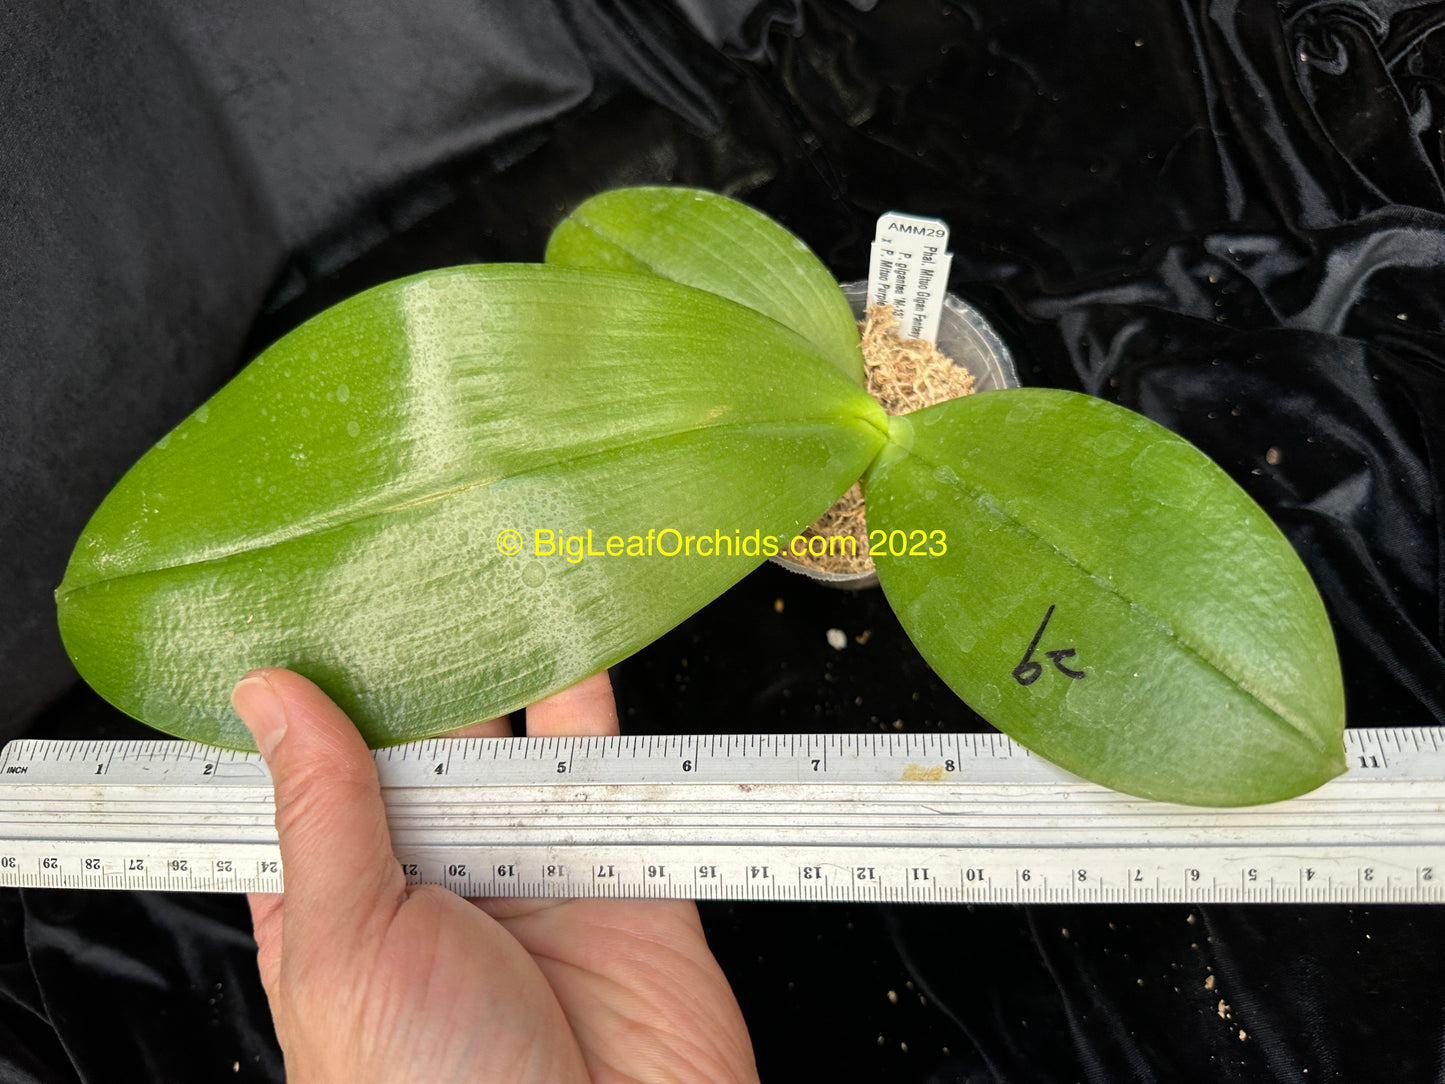 Phalaenopsis Mituo Gigan Fantasy - Seedling